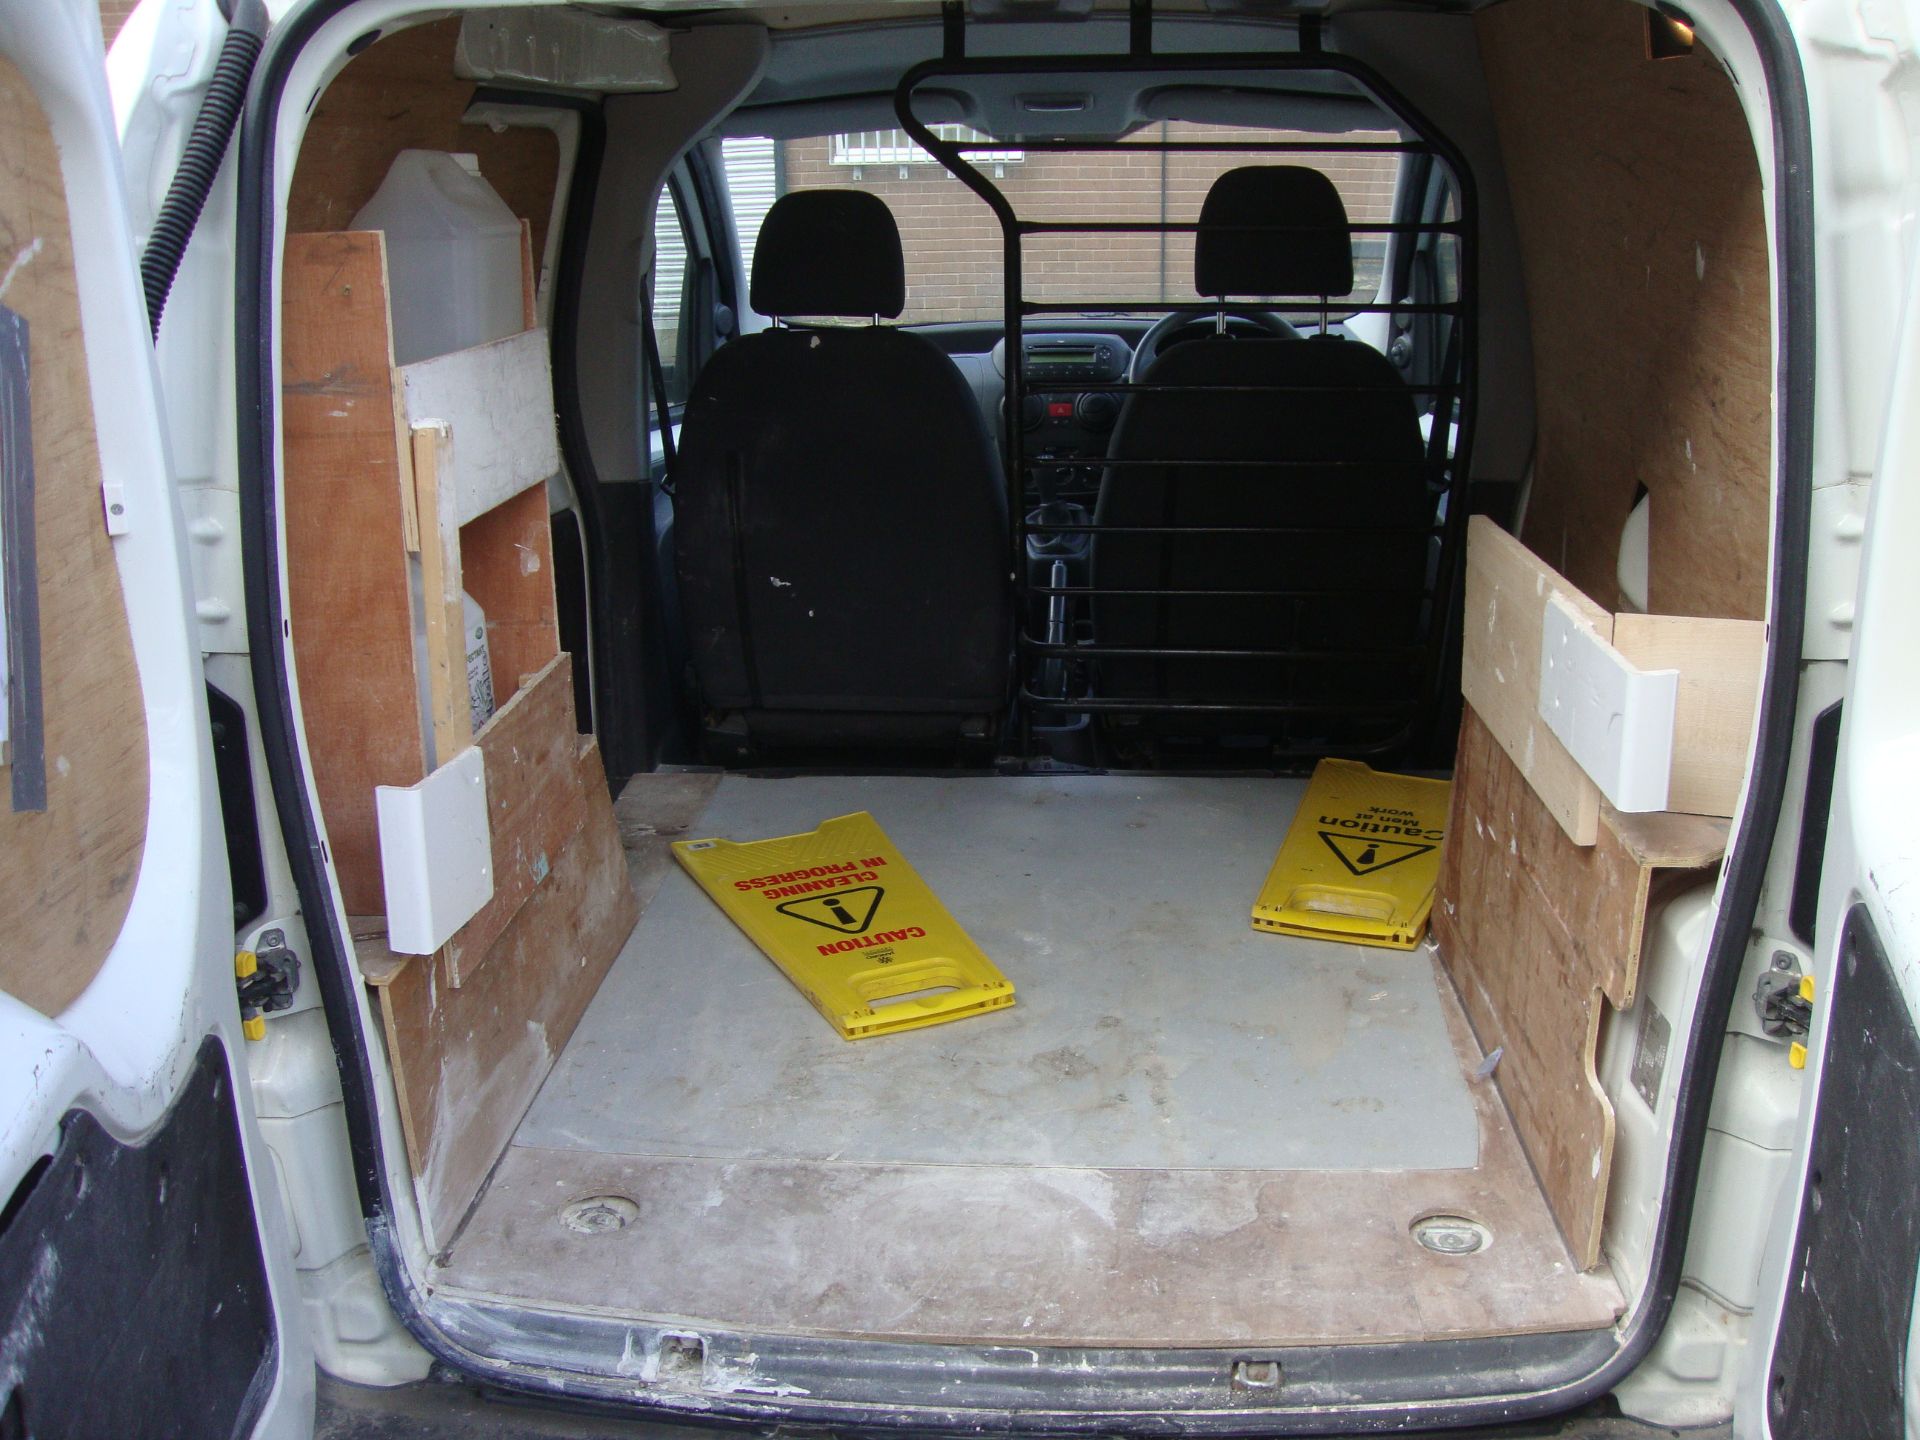 2010 Peugeot Bipper S HDi panel van - Image 6 of 11